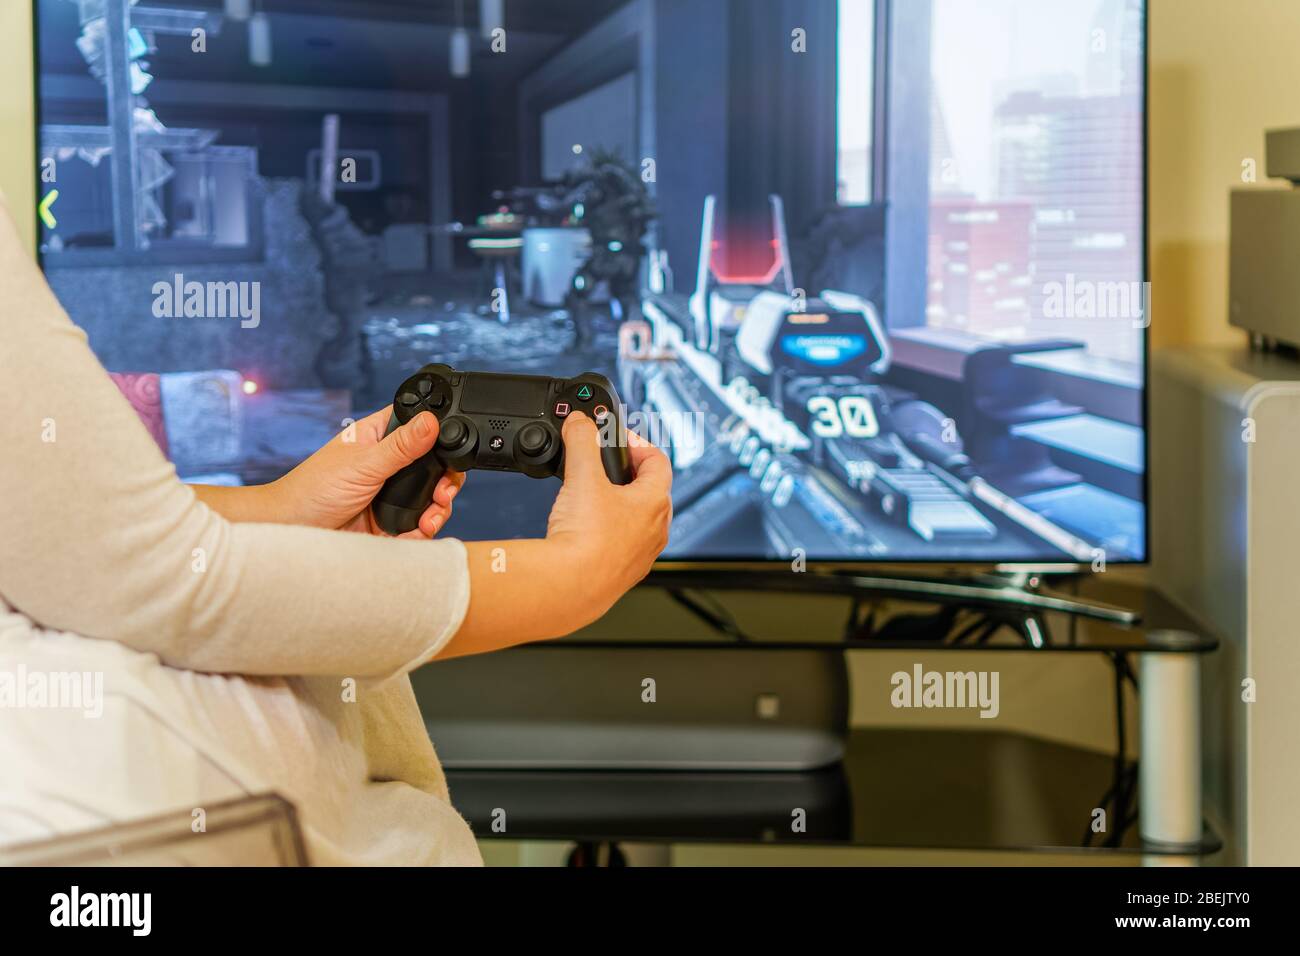 PlayStation 4-Spiel auf dem Fernseher spielen. Female Holding DualShock 4  Wireless-Controller lernt Action-PS4-Spiel auf großem Bildschirm zu  spielen, mit Fokus auf Hände Stockfotografie - Alamy